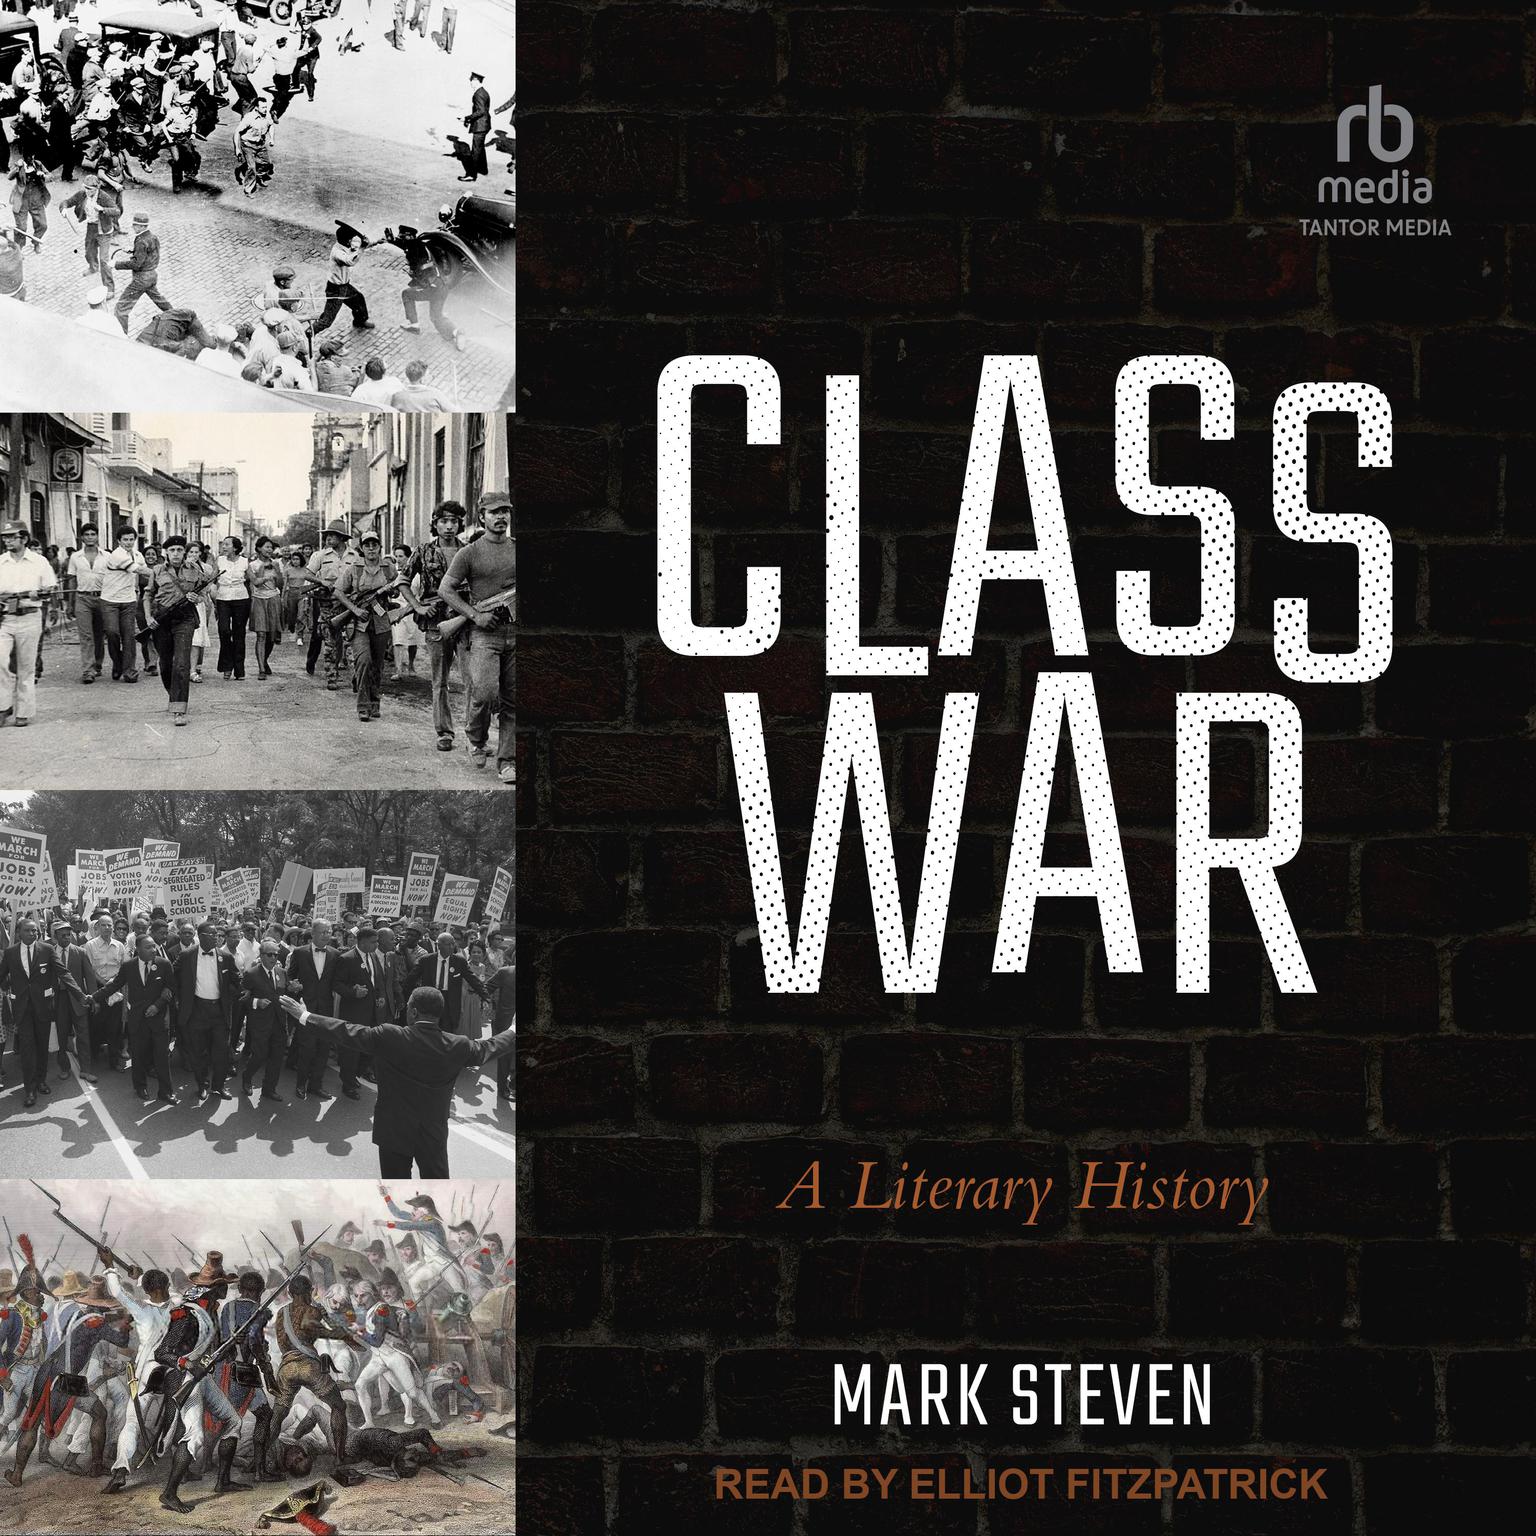 Class War: A Literary History Audiobook, by Mark Steven